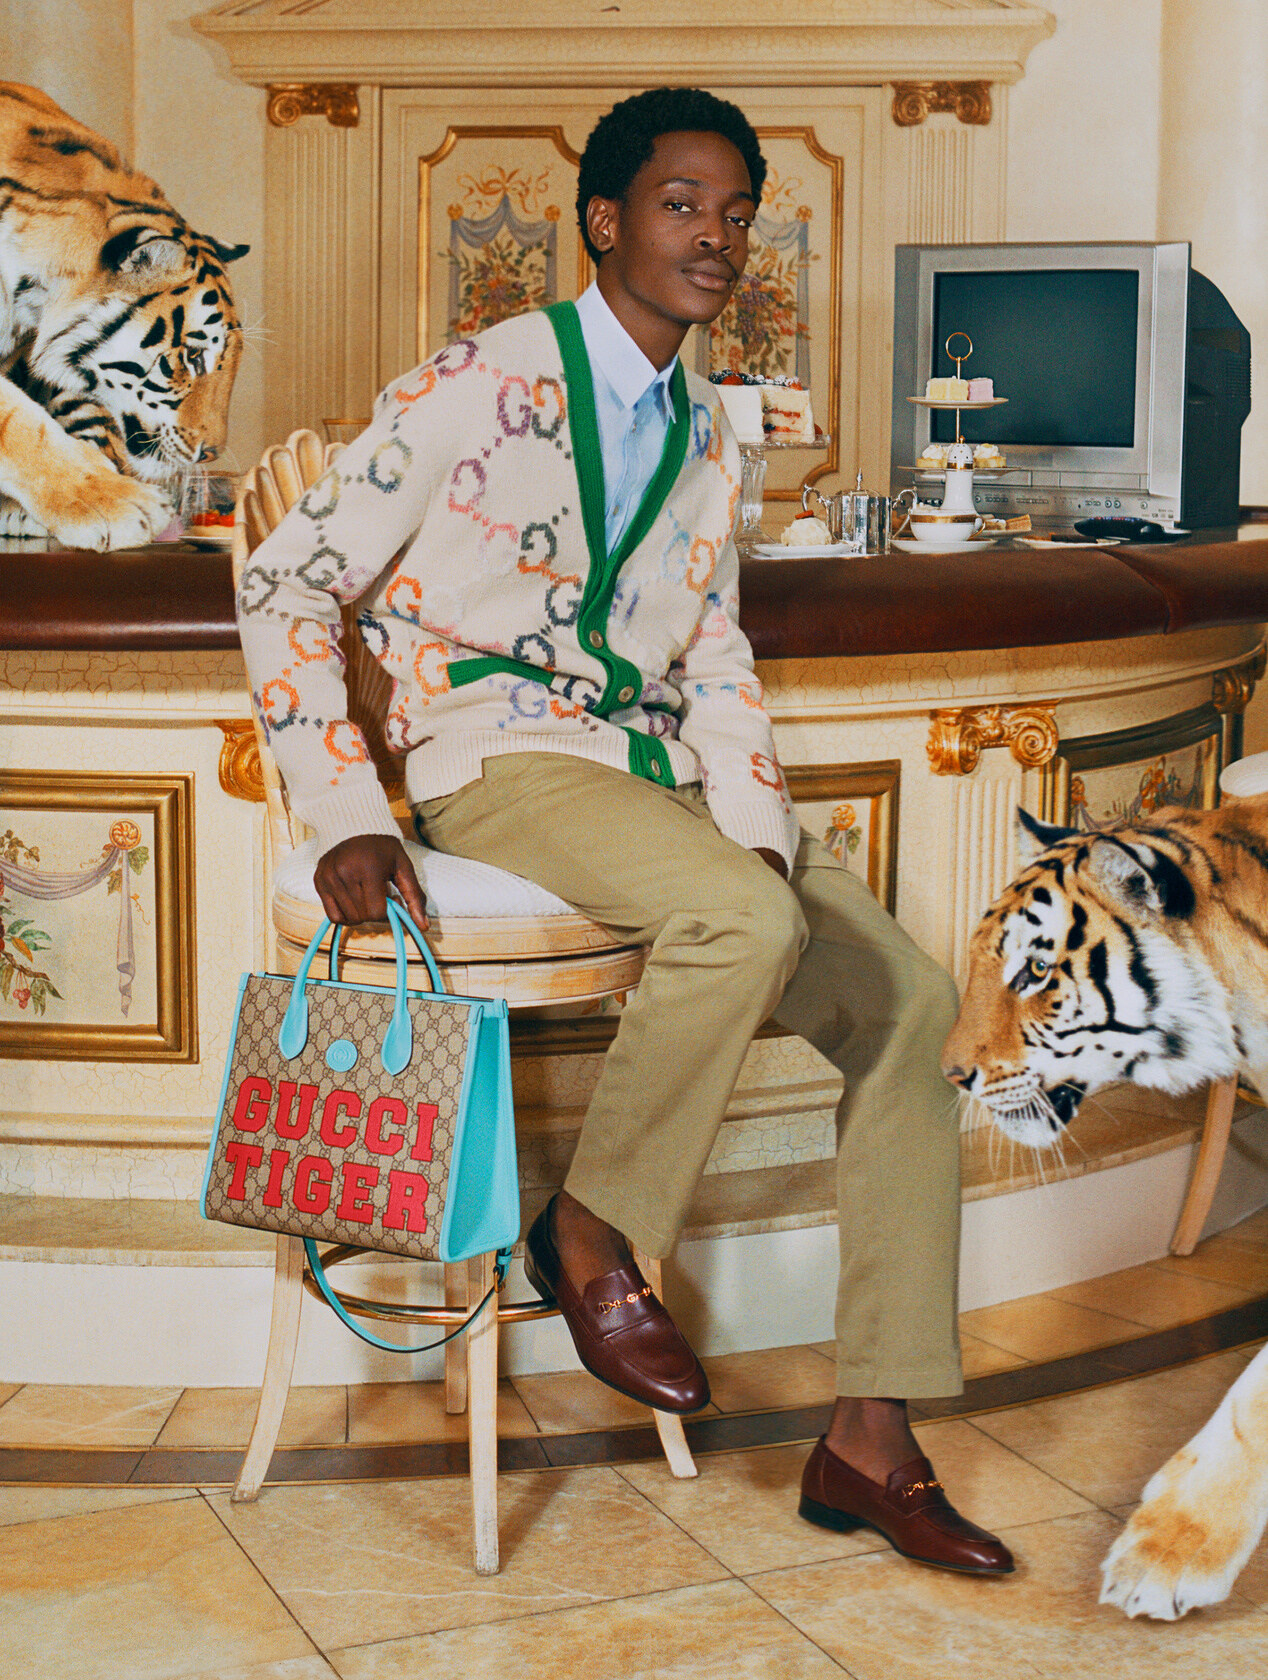 Gucci Tiger Collezione